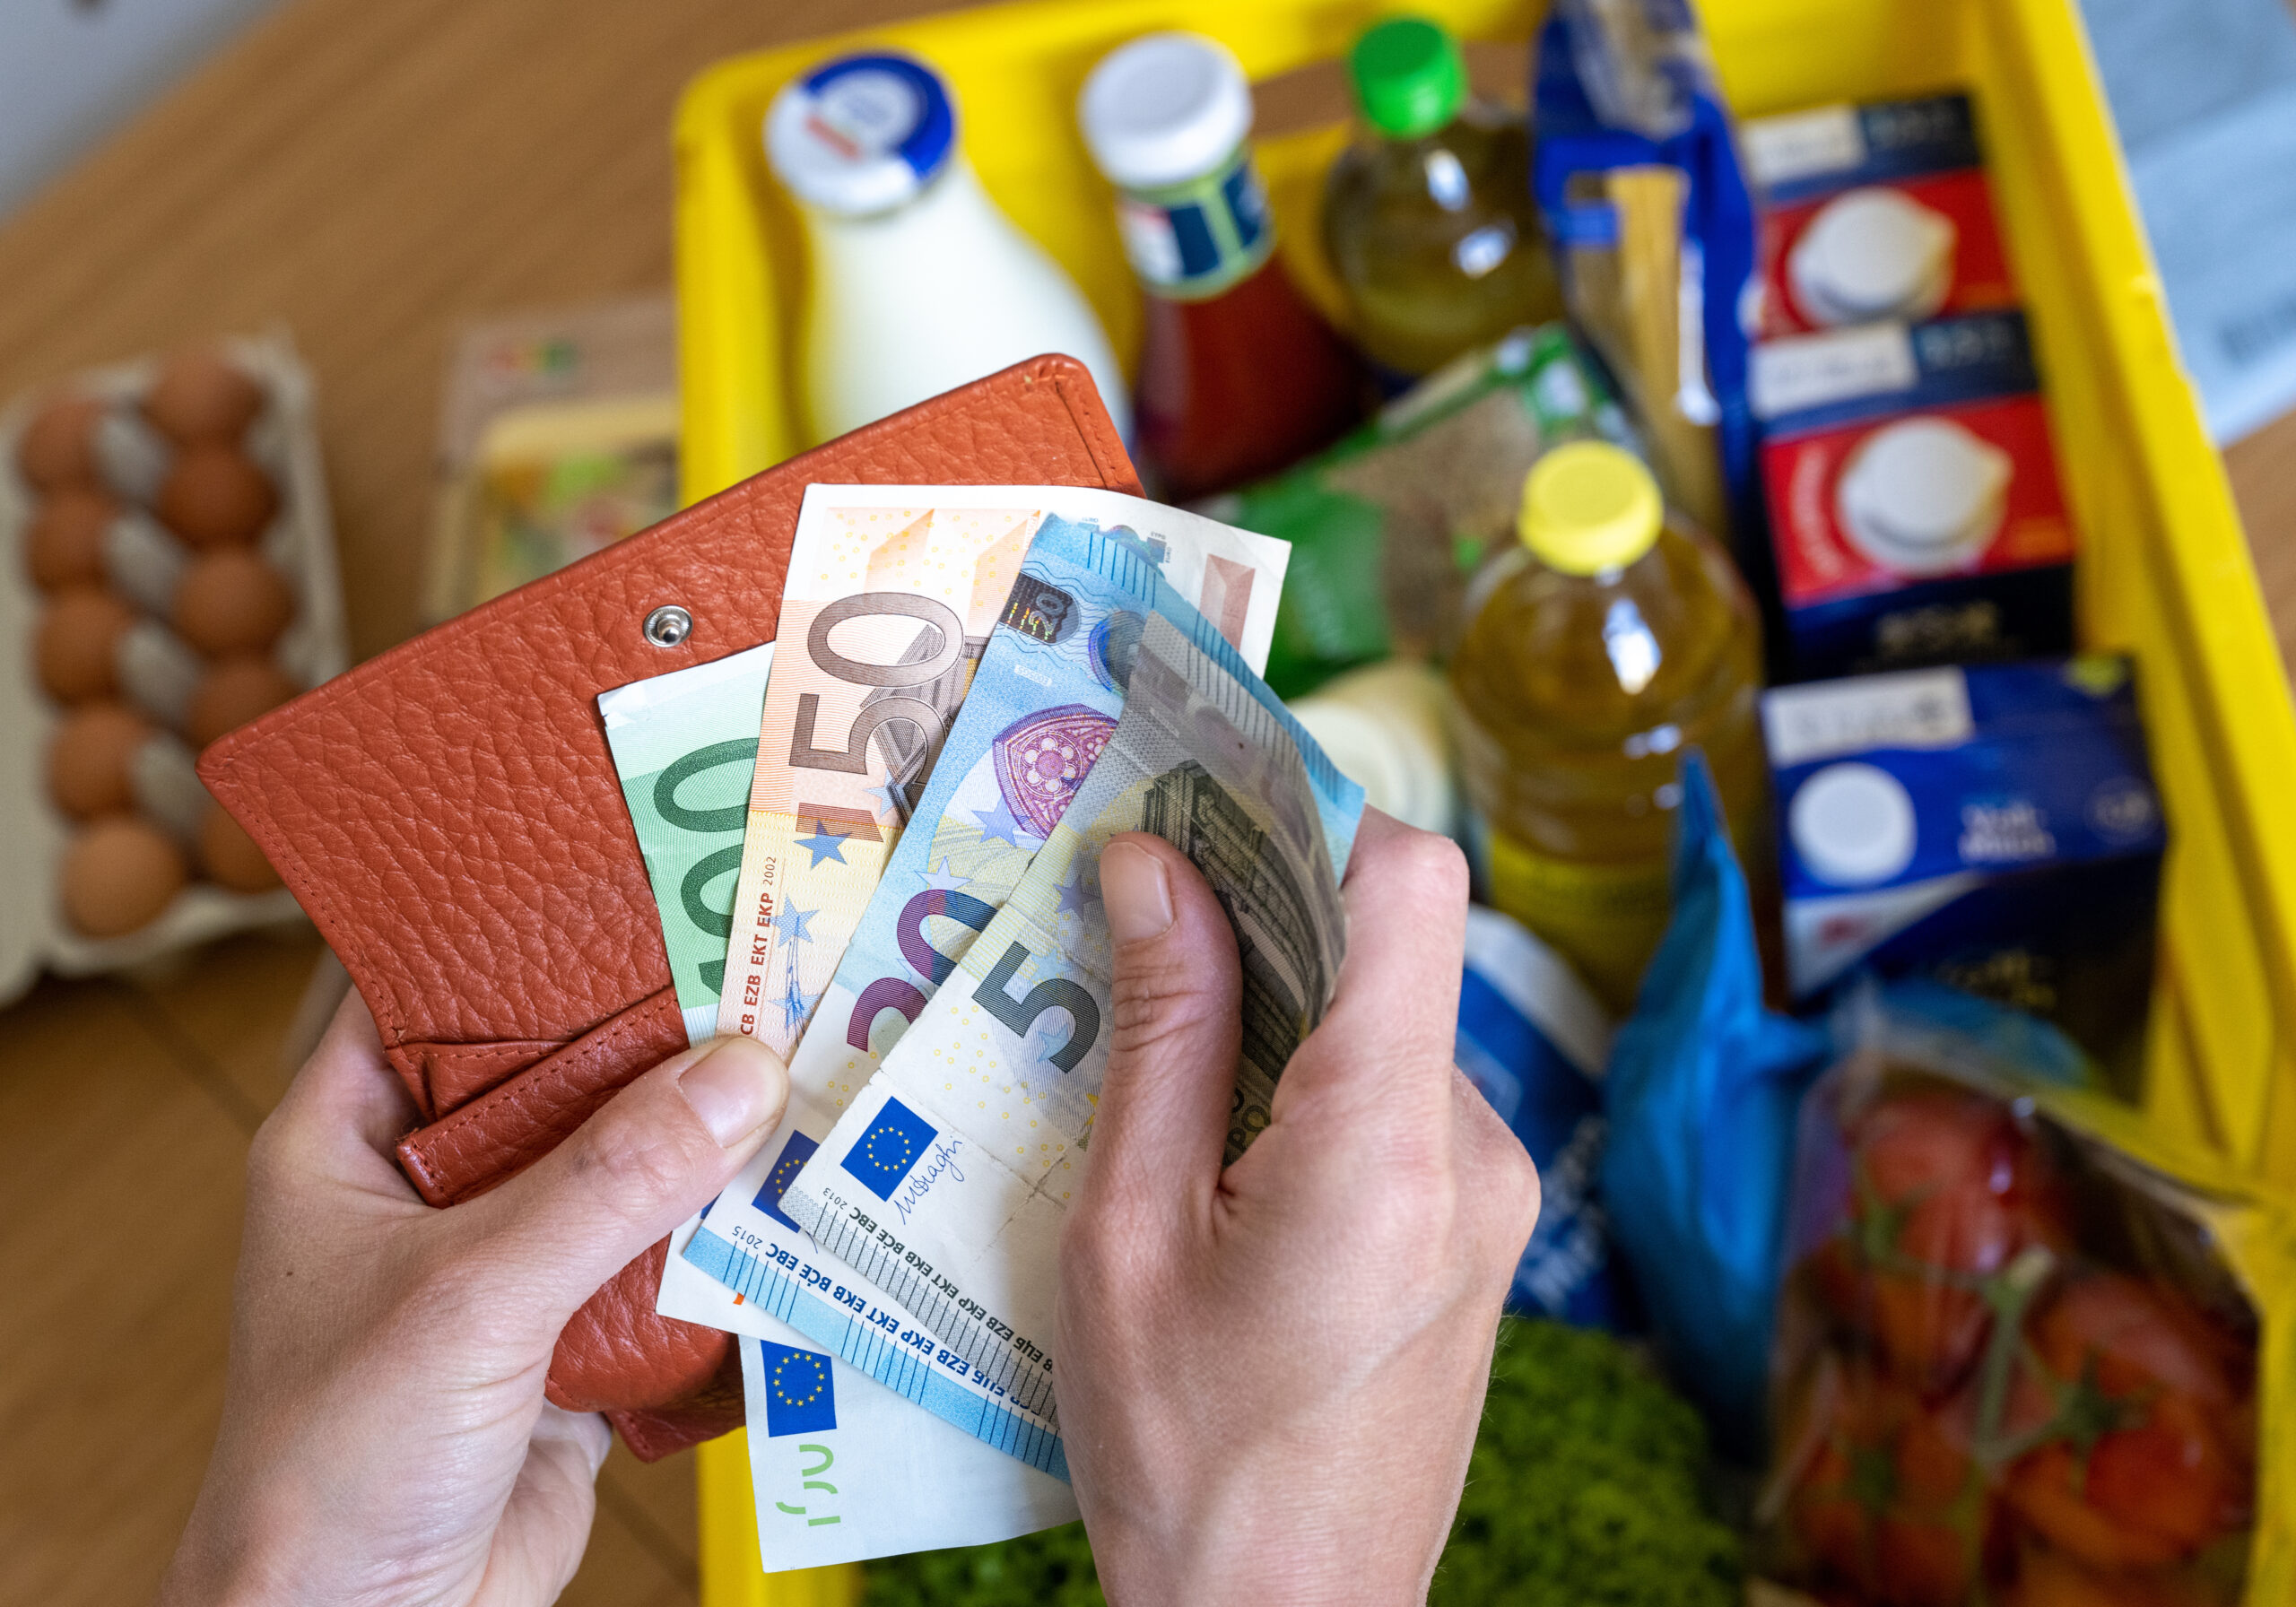 Eine Einkaufskiste mit Lebensmitteln steht auf einem Küchentisch, während eine Frau Euro-Banknoten in den Händen hält.